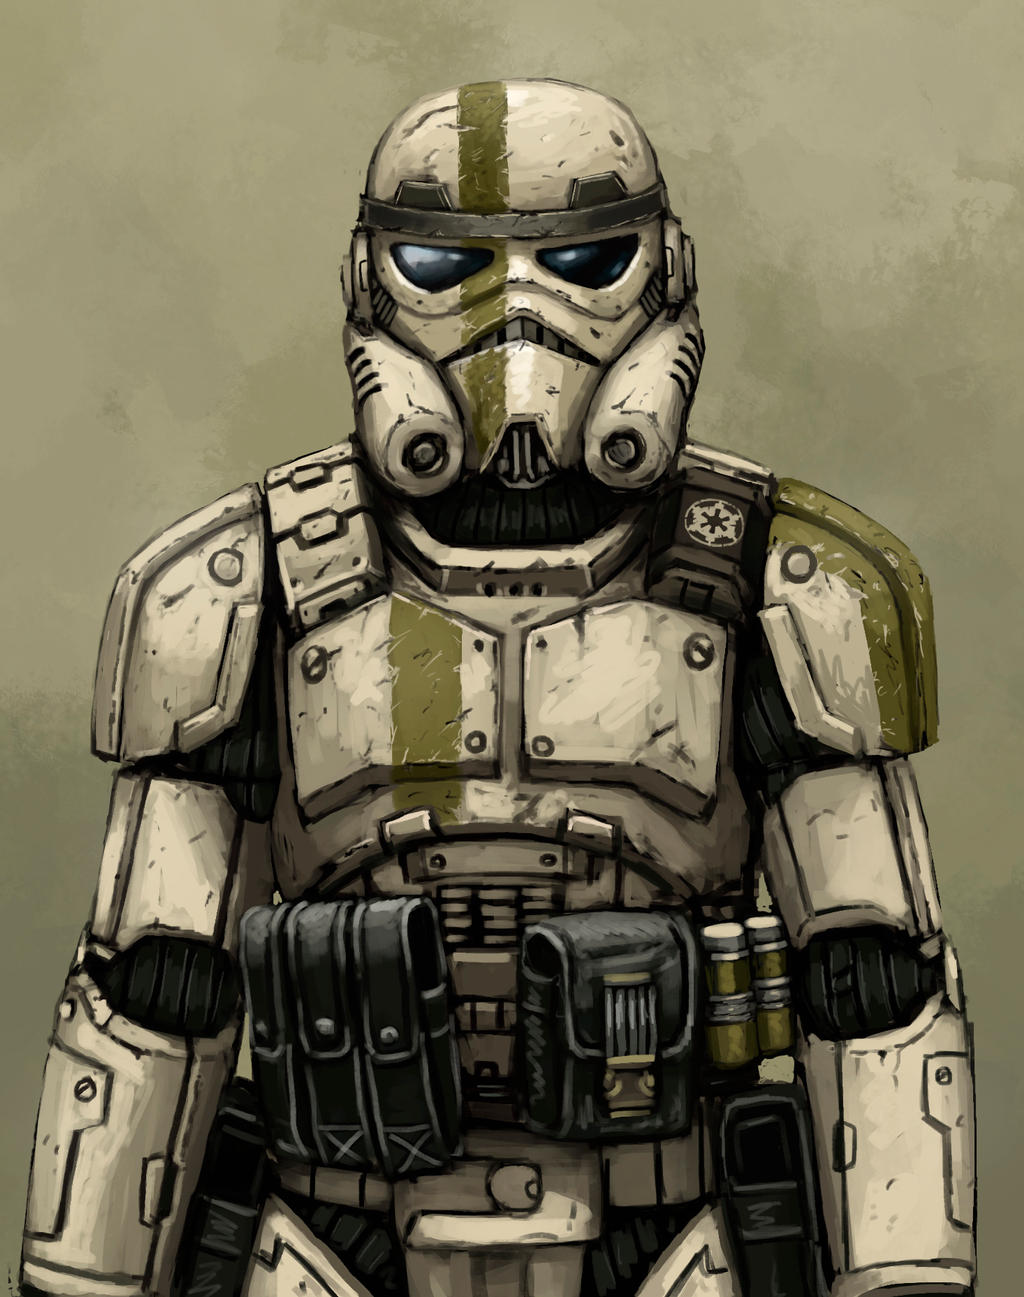 Storm Trooper redesign